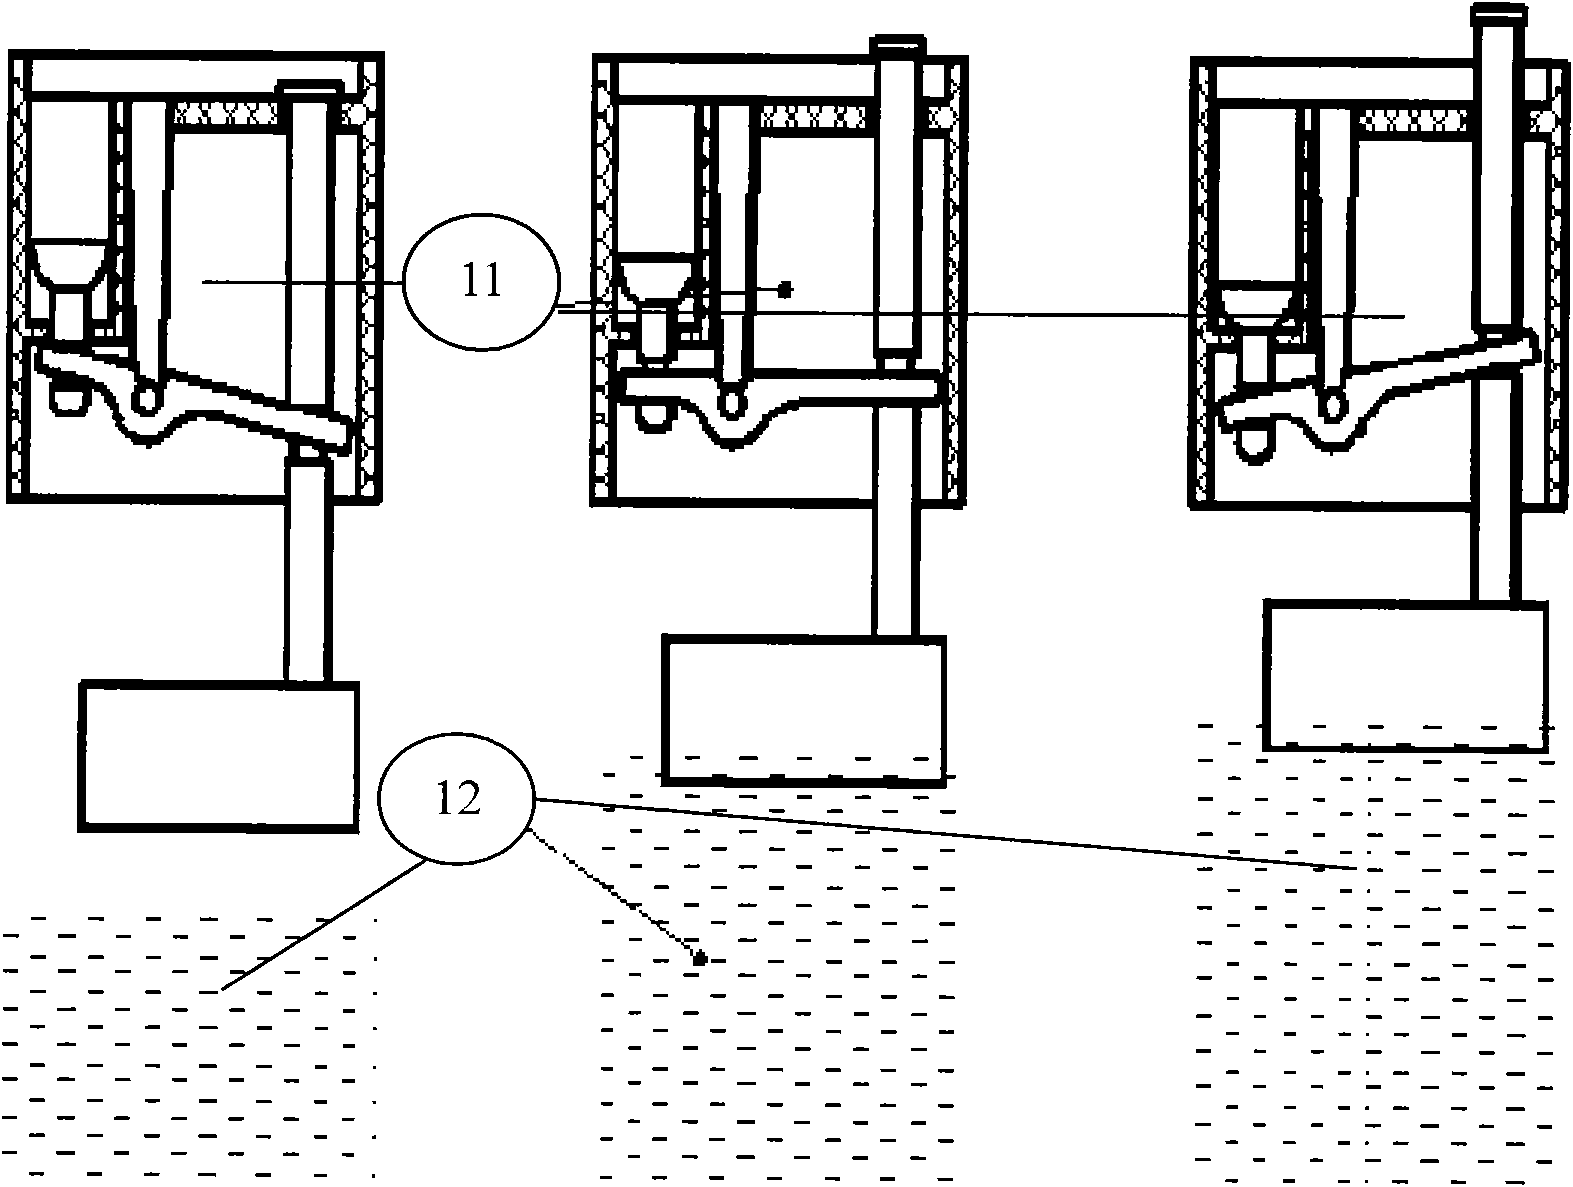 Battery liquid-filling valve